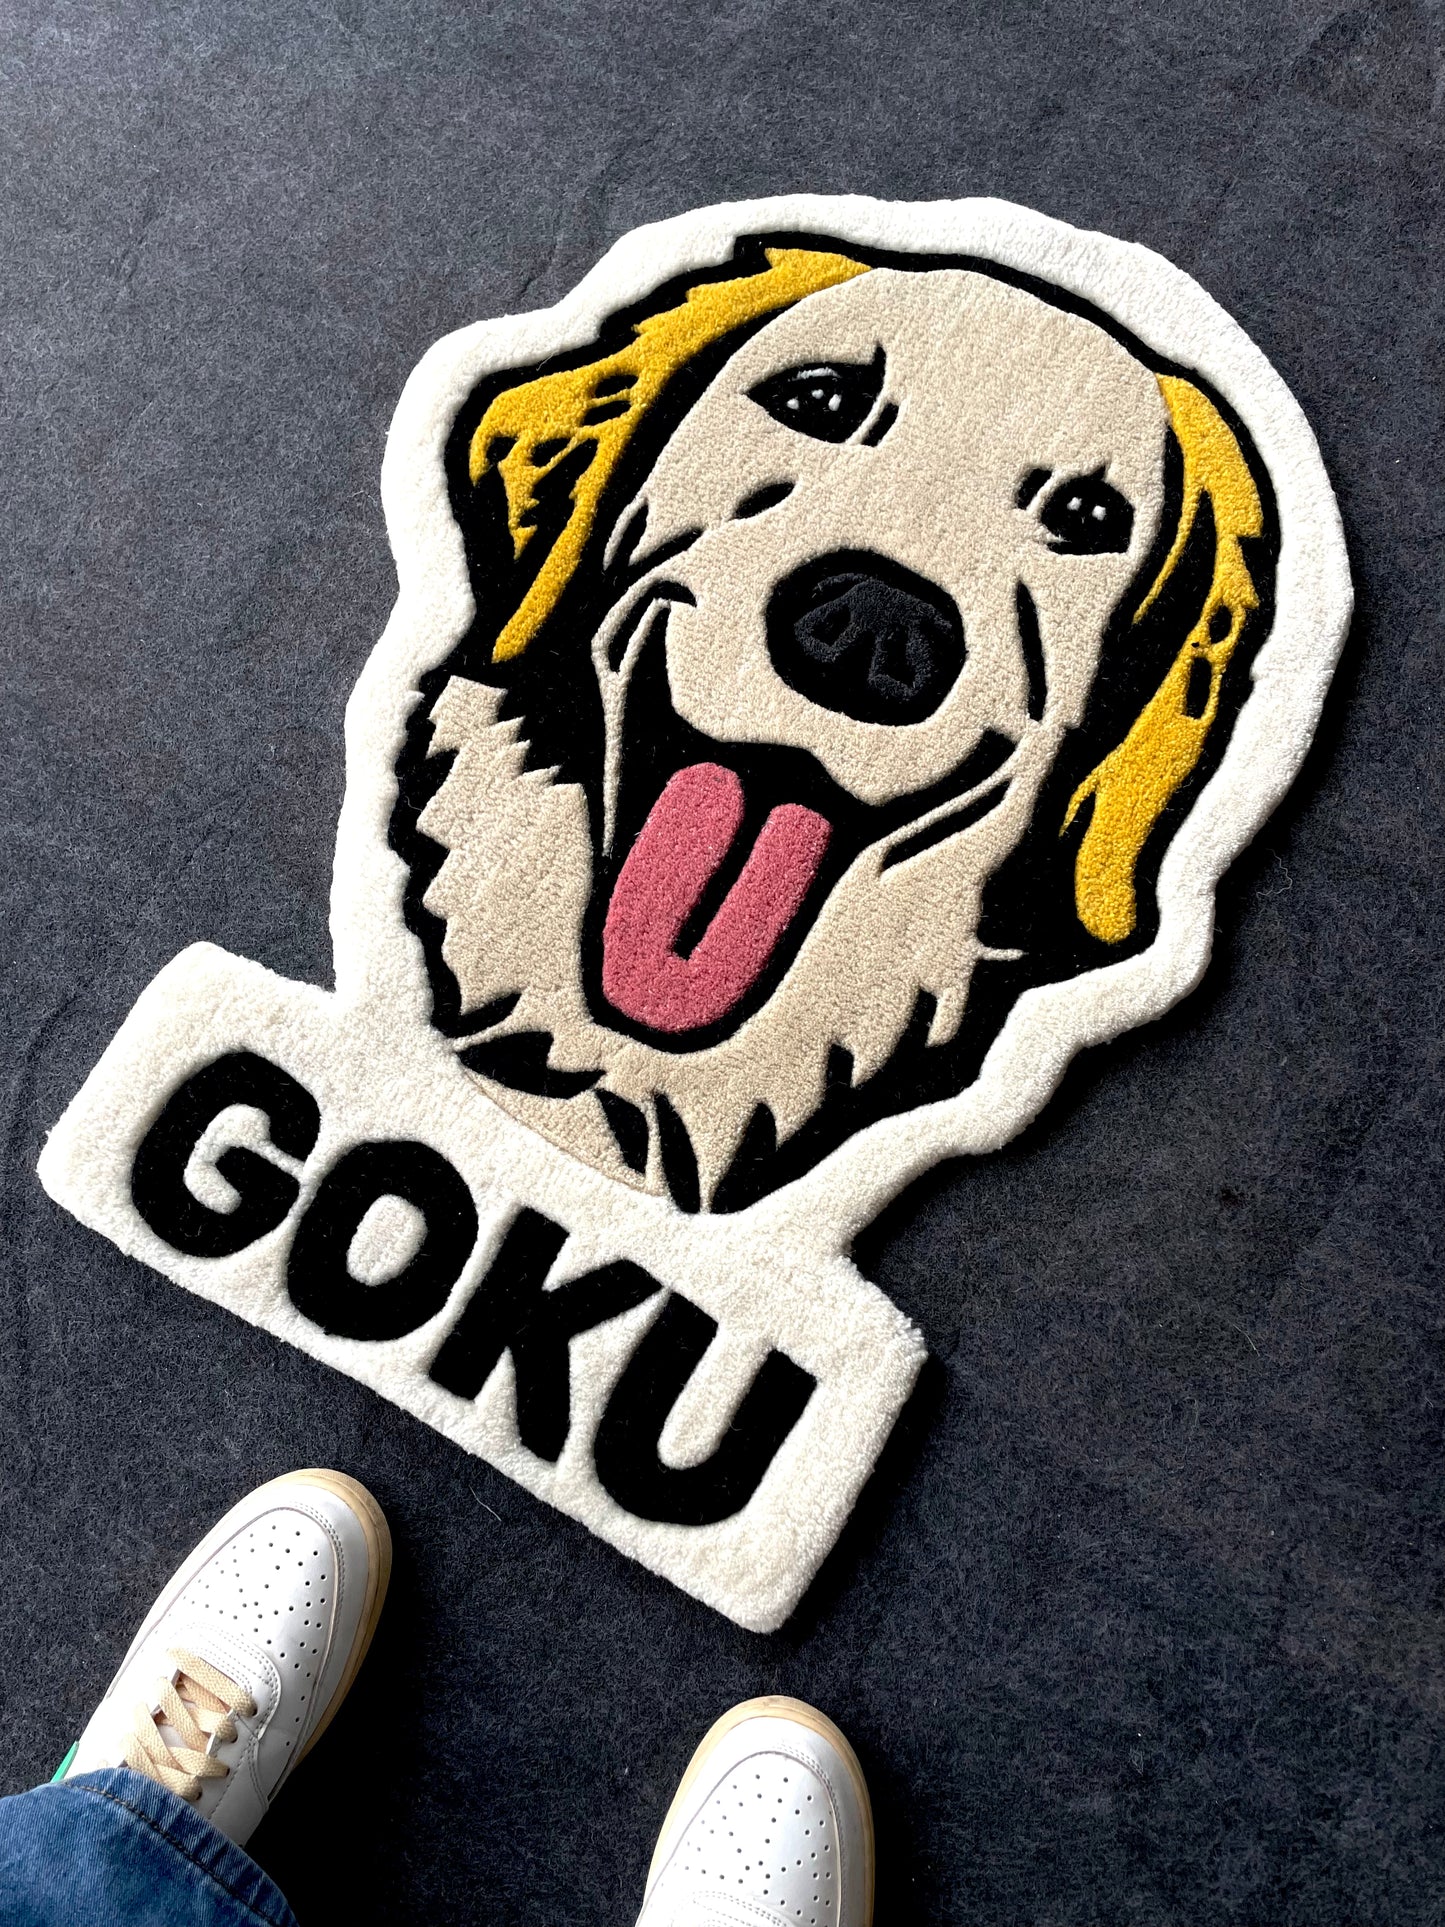 Goku- The Labrador Retriever Hand-Tufted Rug (Customisable)